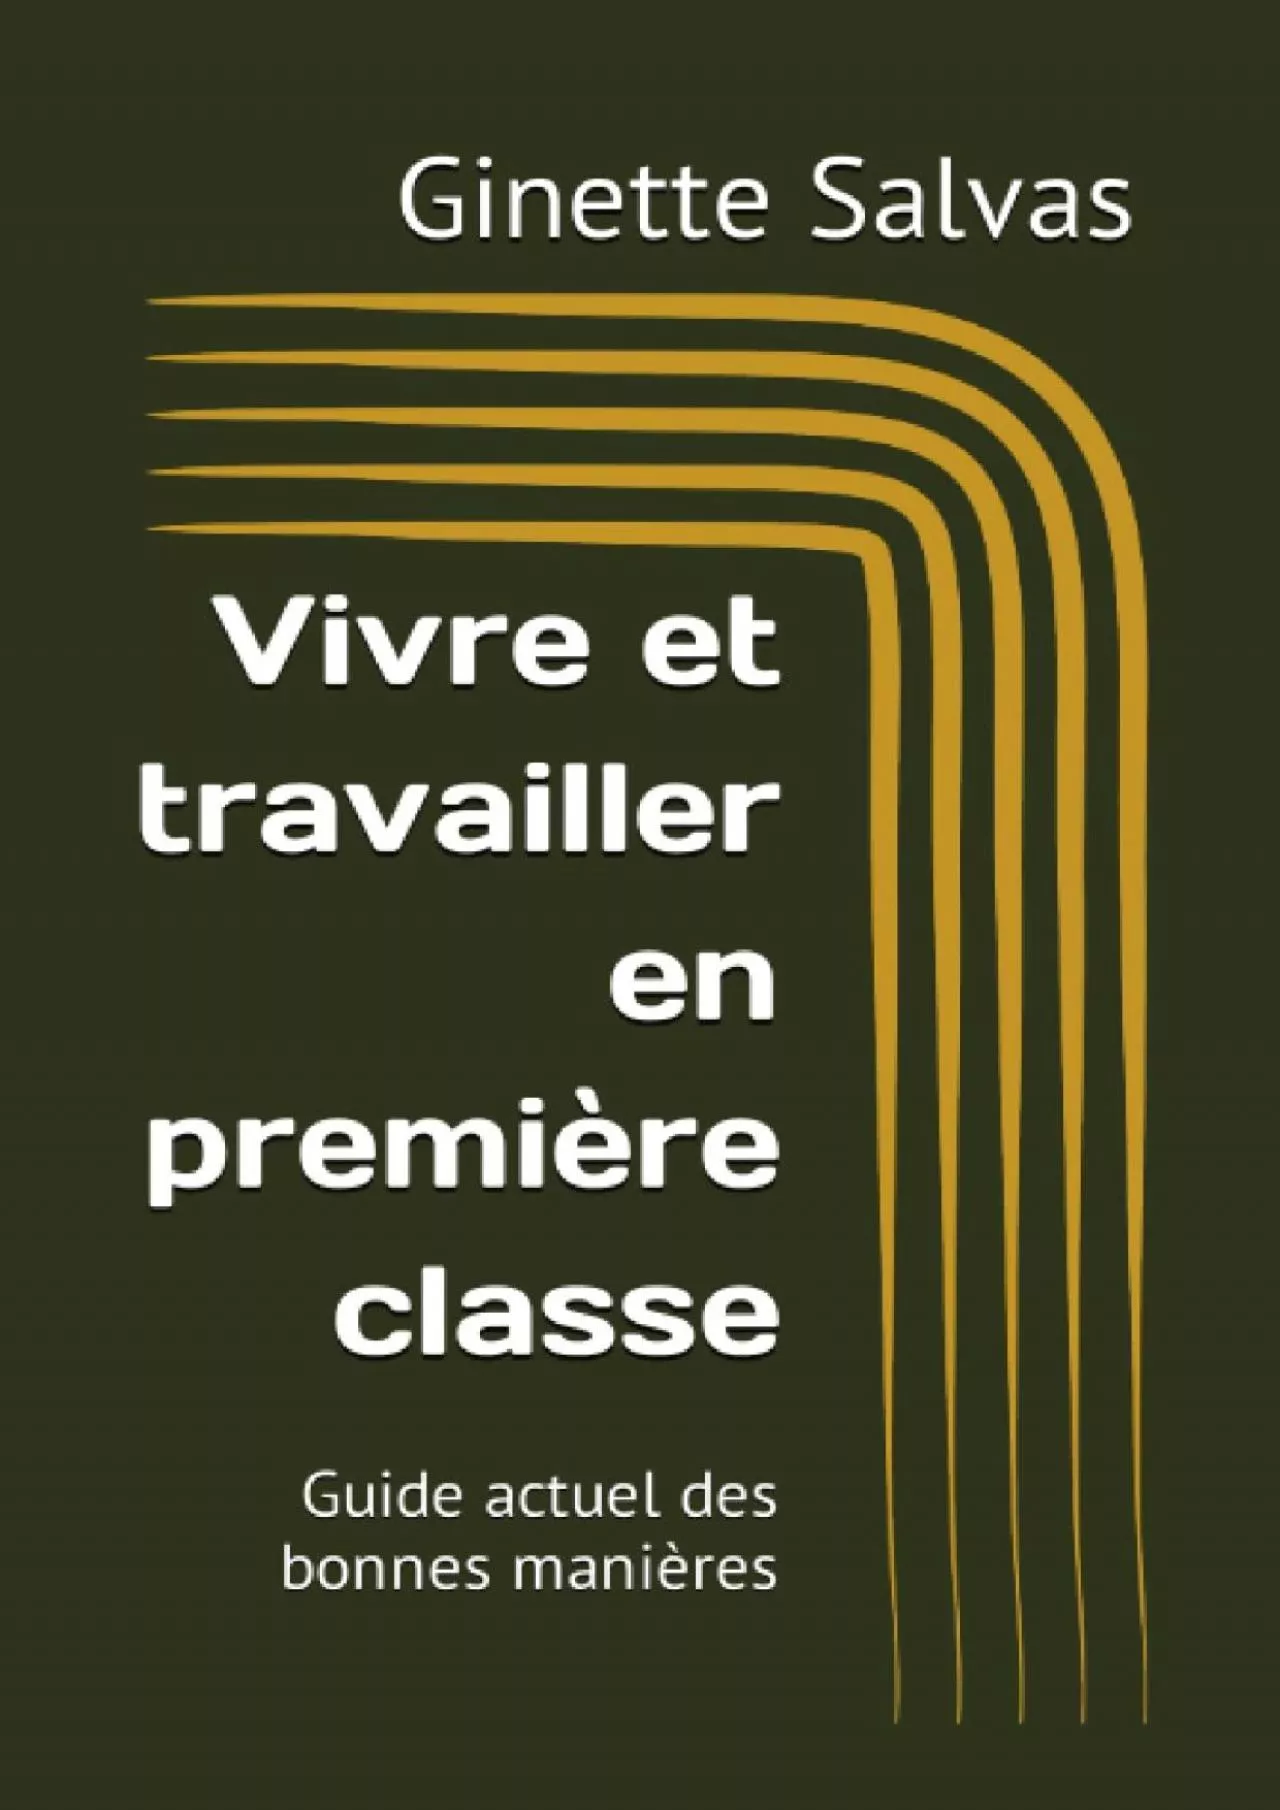 [EBOOK] Vivre et travailler en première classe: Guide actuel des bonnes manières French